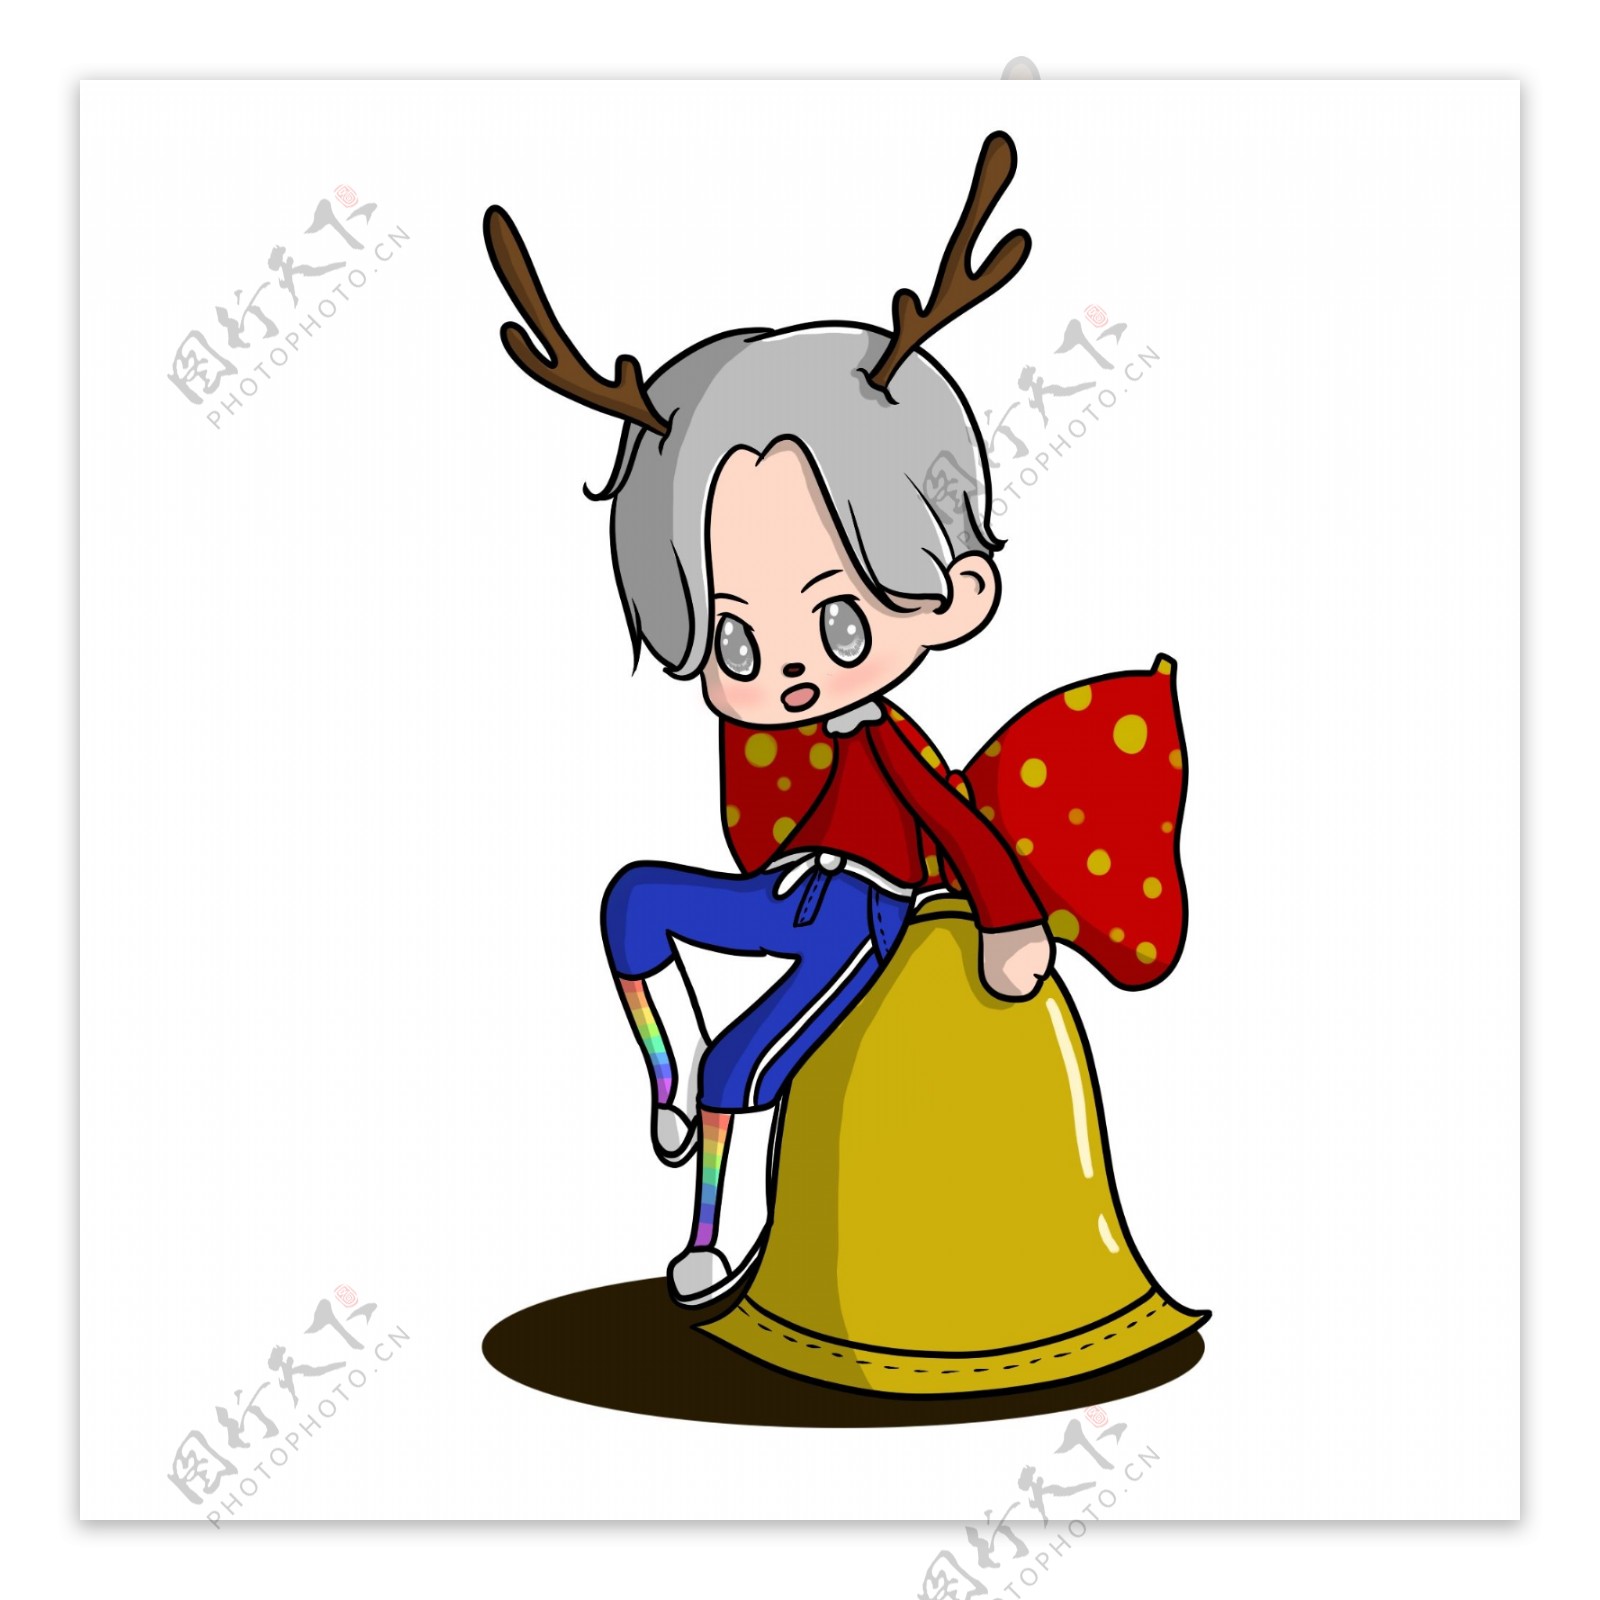 原创手绘Q版人物圣诞节坐在铃铛上元素